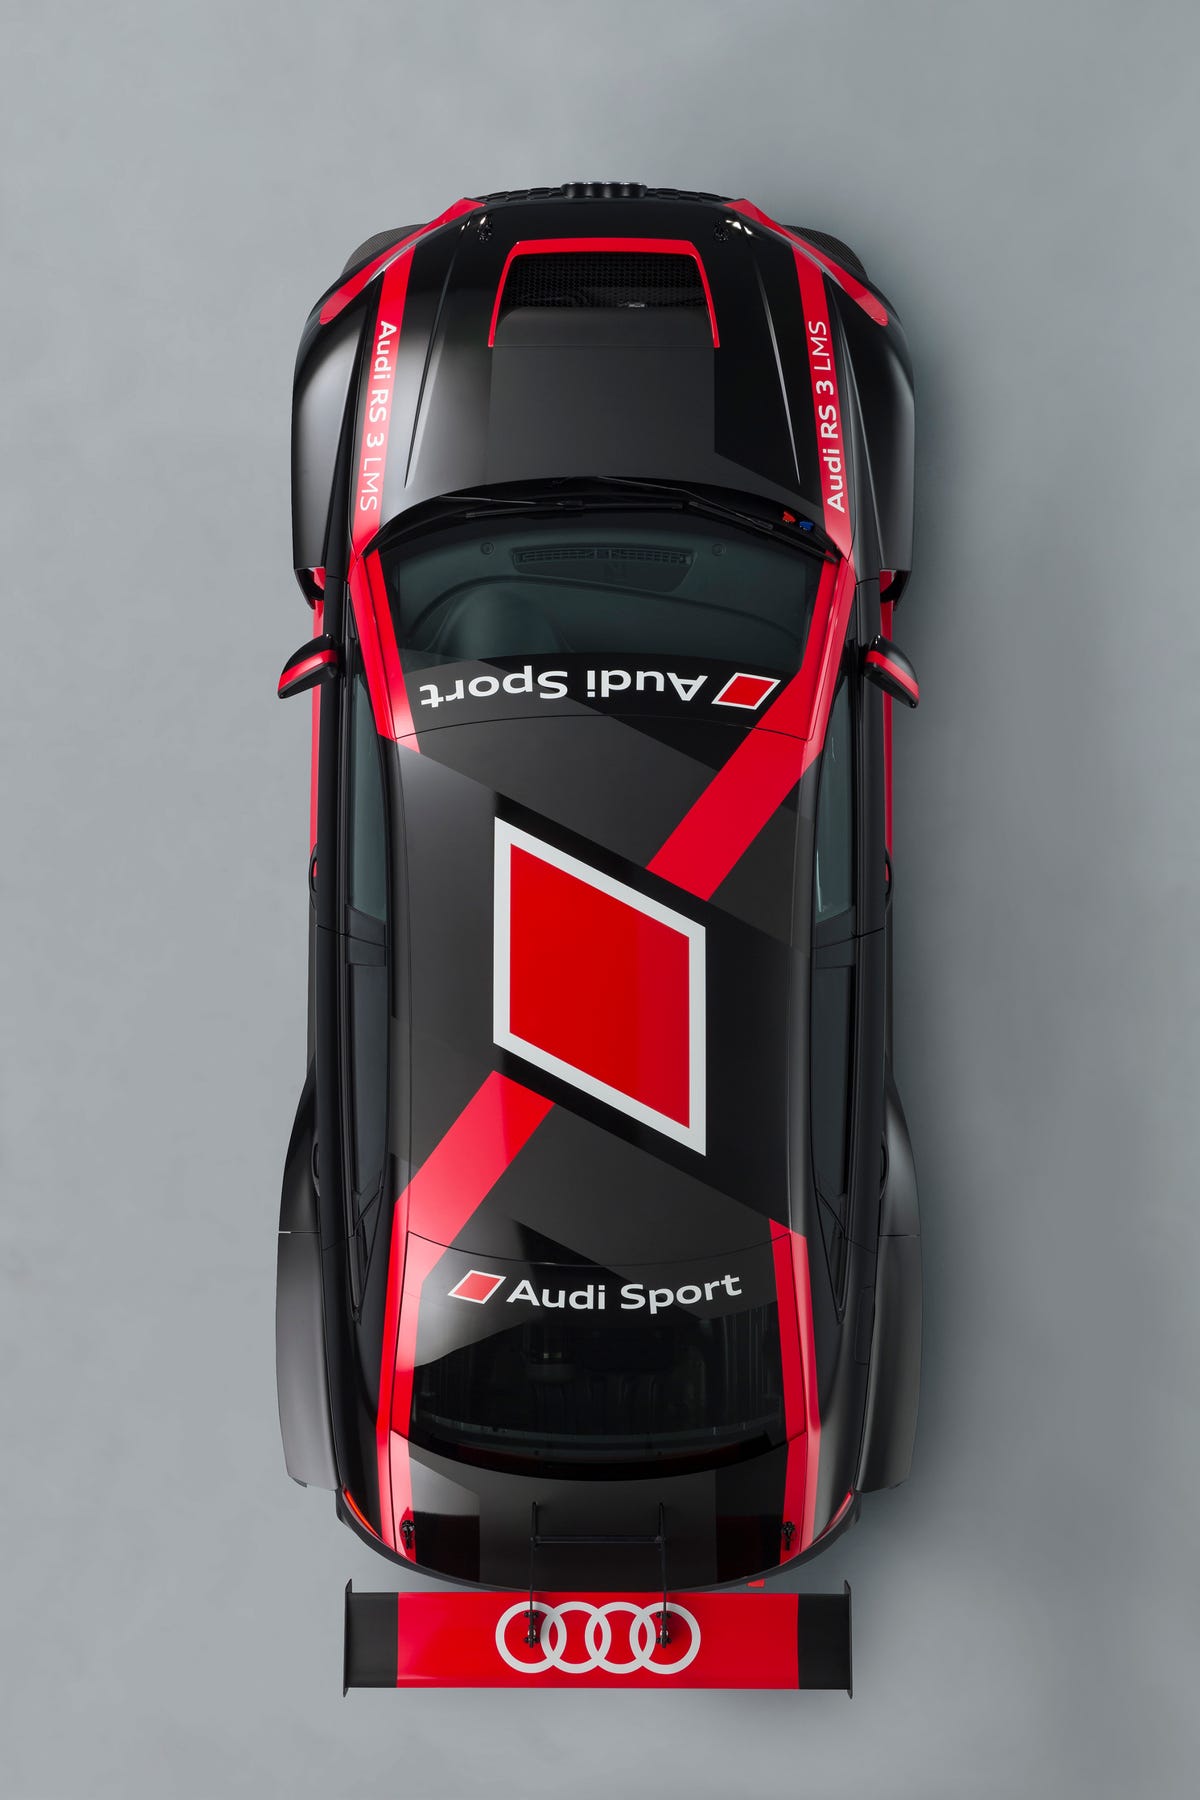 Audi RS3 LMS